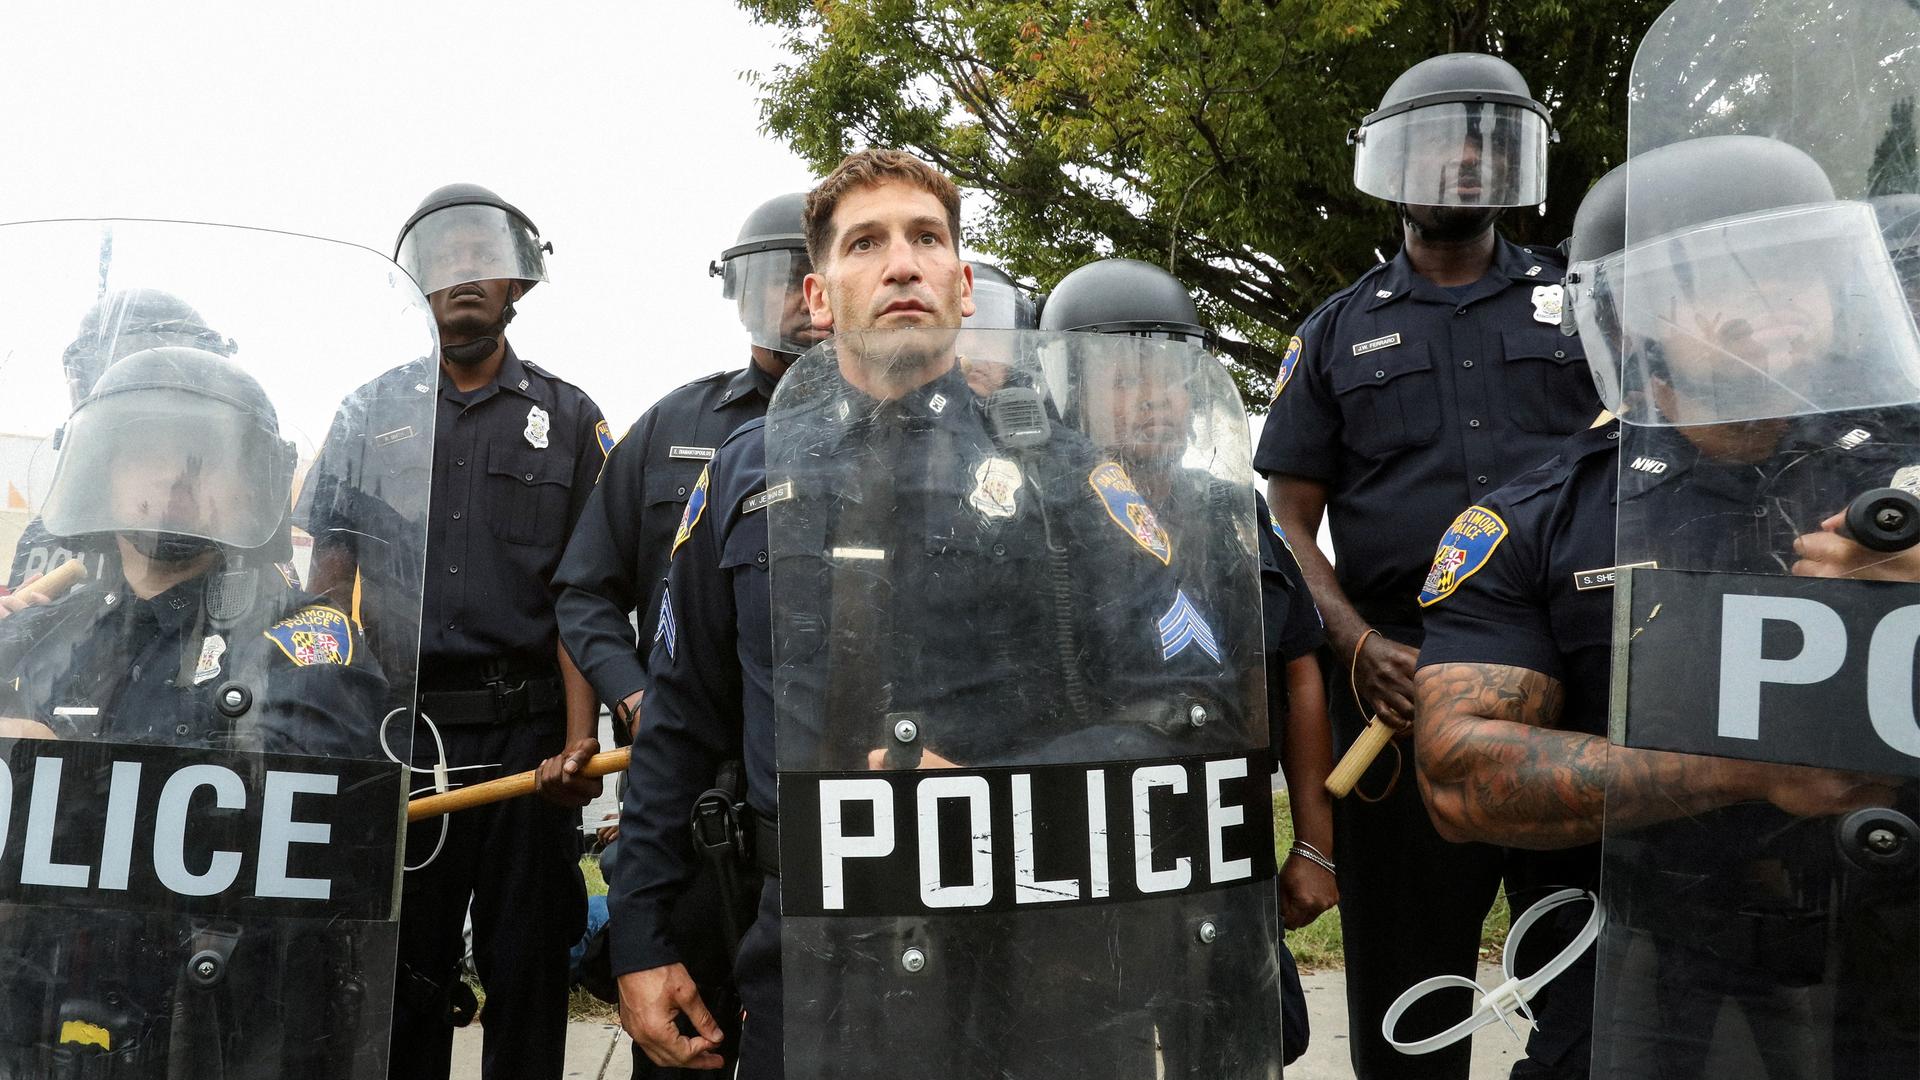 Polizisten stehen mit Helmen, Schlagstöcken und Schildern in einer Reihe.